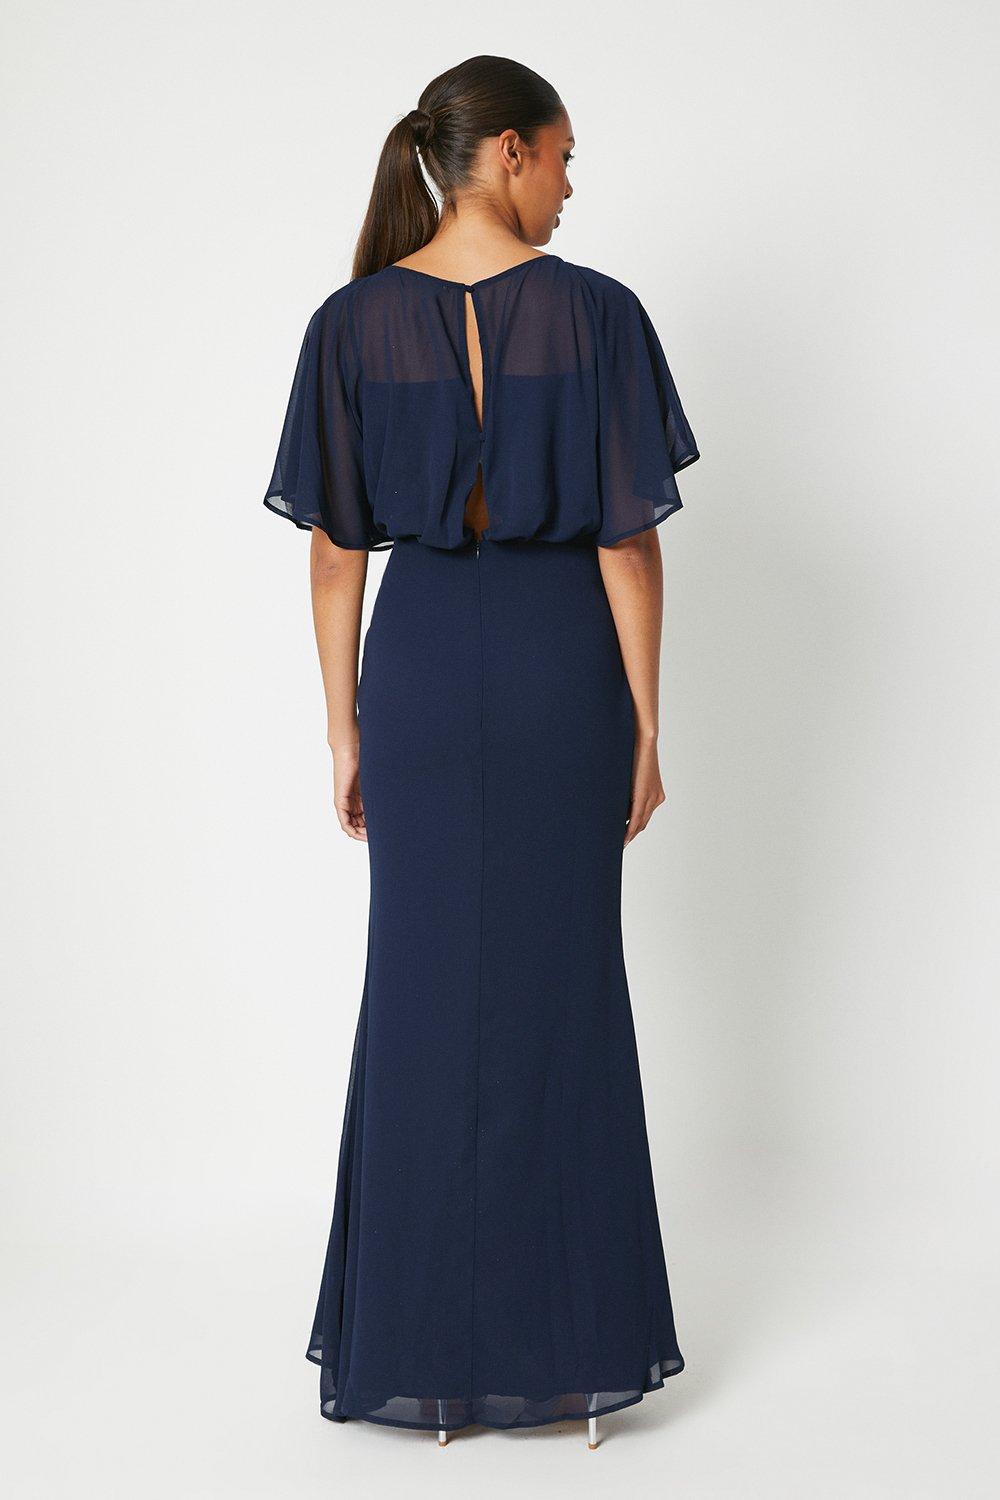 Michael Cinco Cobalt blue Ball Gown | Michael cinco gowns, Evening dress  beaded, Gowns